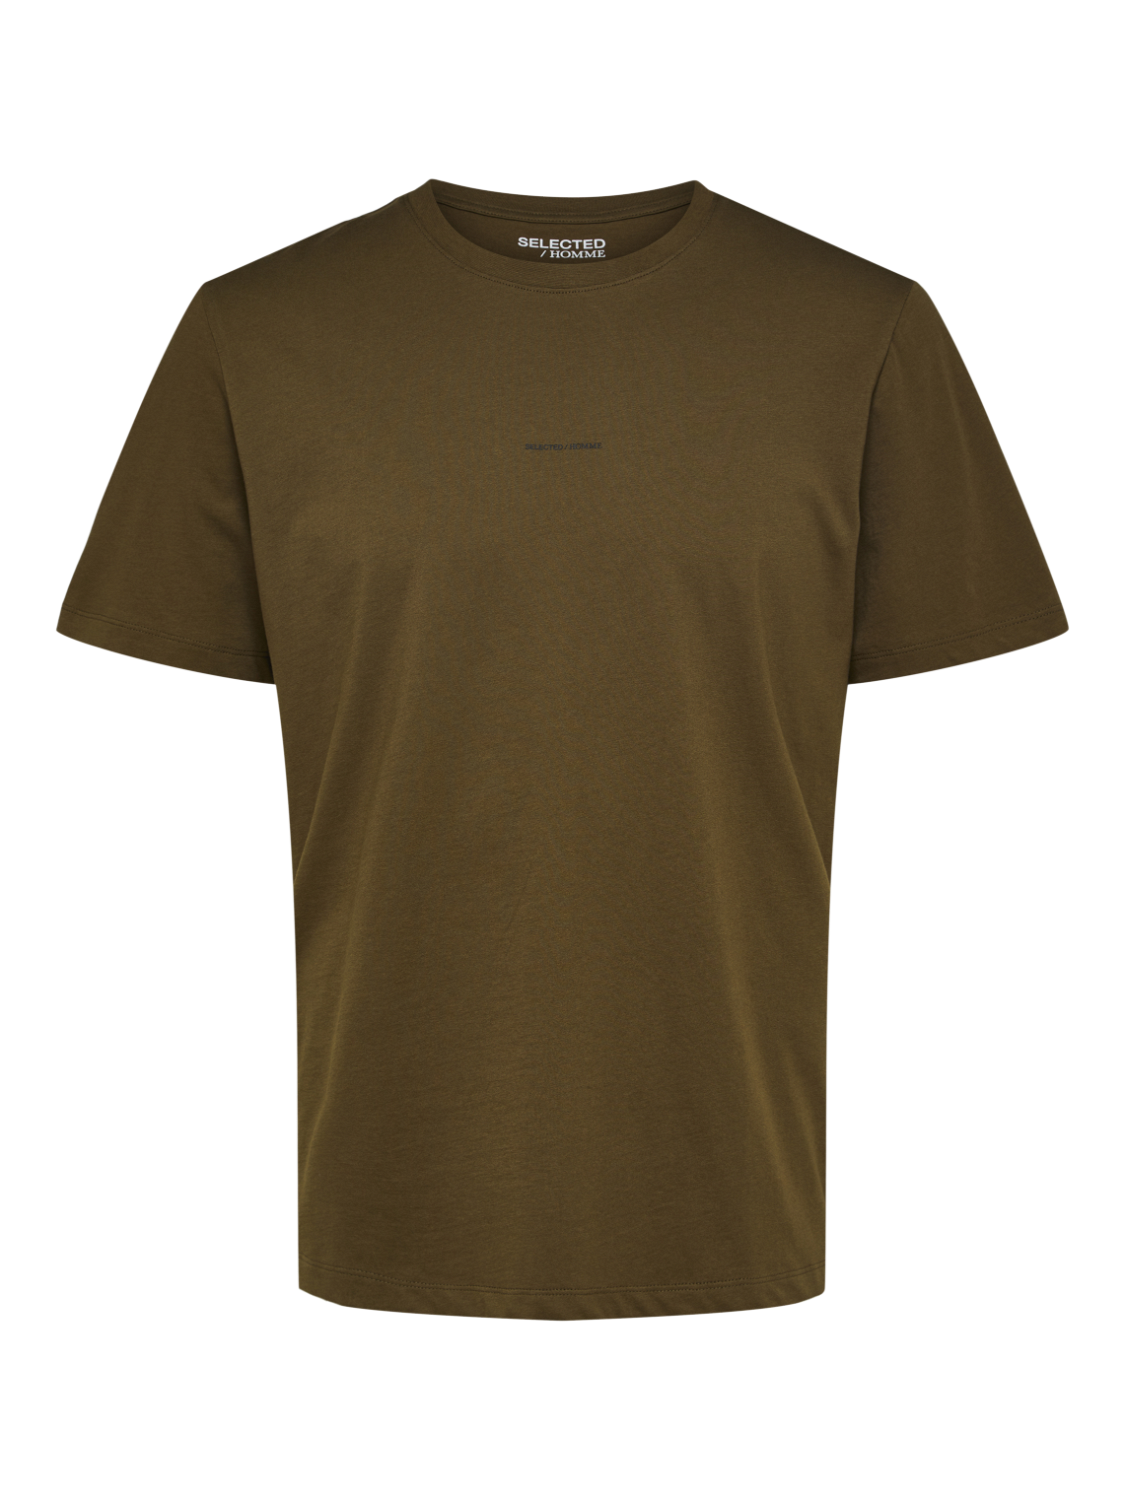 SELECTED HOMME - ASPEN T-Shirt - Dark Olive